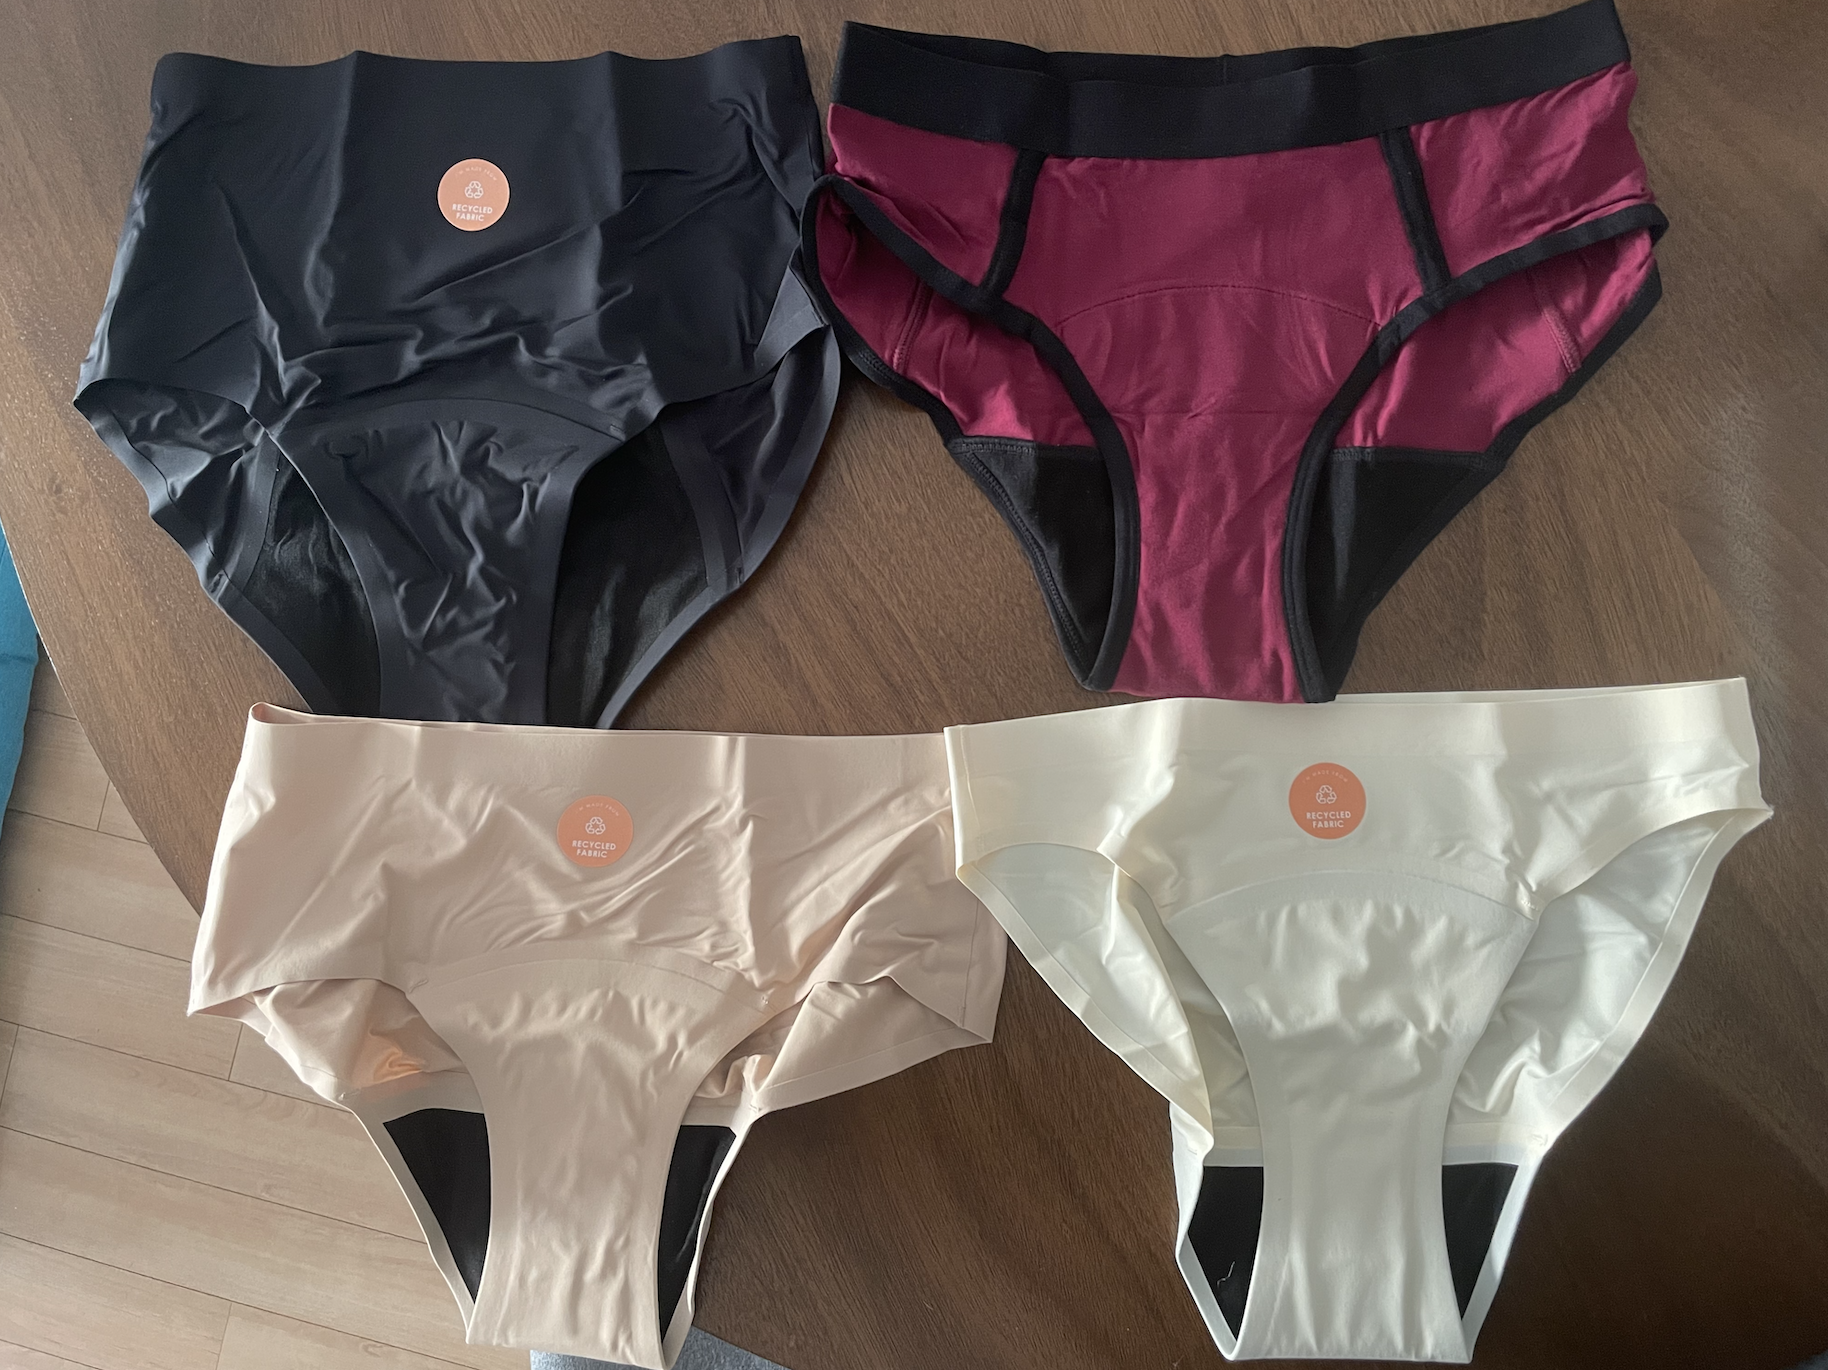 Camouflage-Prints Amazon Jungen Kleidung Unterwäsche Slips & Panties 5er-Pack 